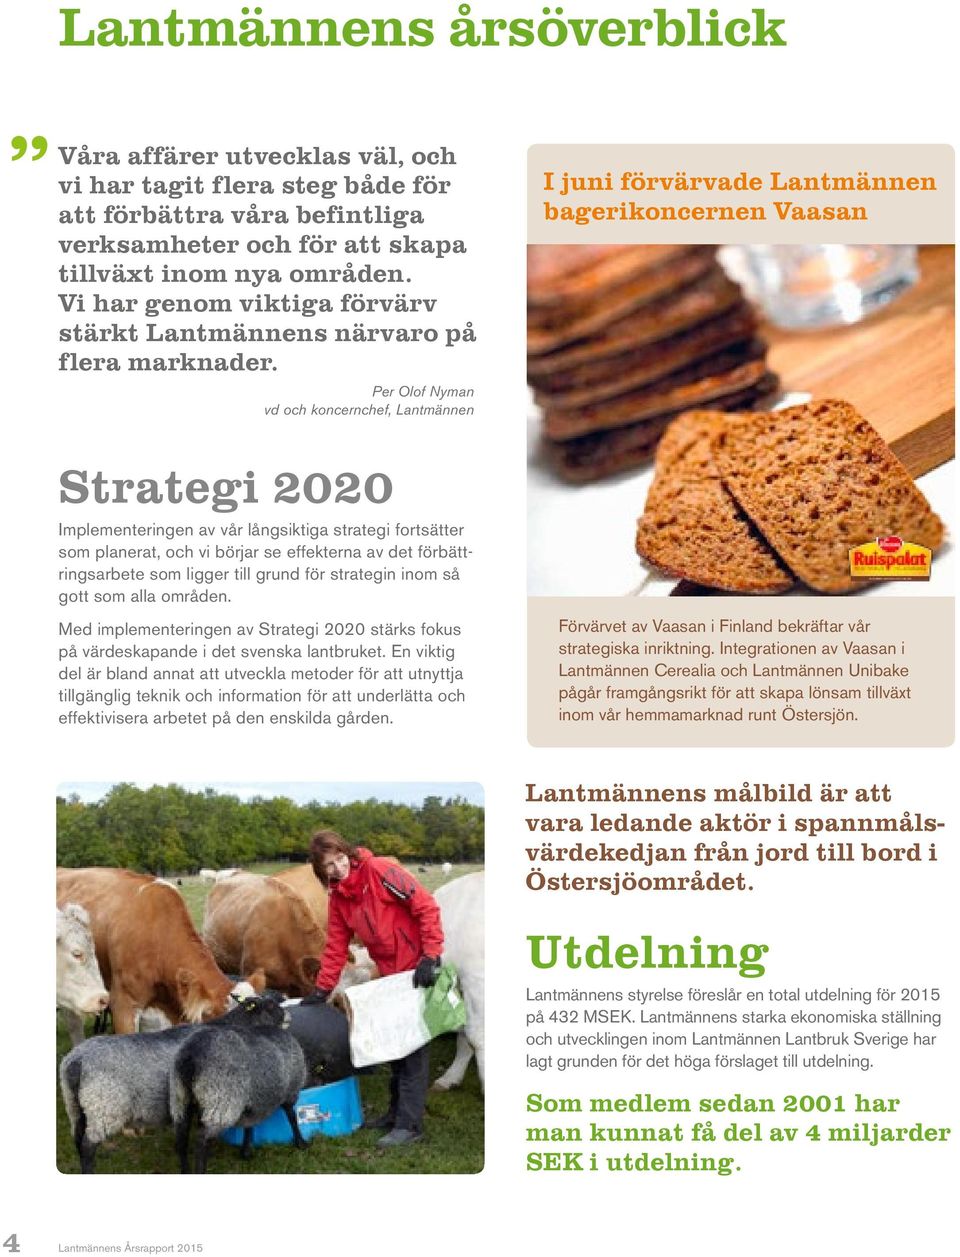 Per Olof Nyman vd och koncernchef, Lantmännen I juni förvärvade Lantmännen bagerikoncernen Vaasan Strategi 2020 Implementeringen av vår långsiktiga strategi fortsätter som planerat, och vi börjar se